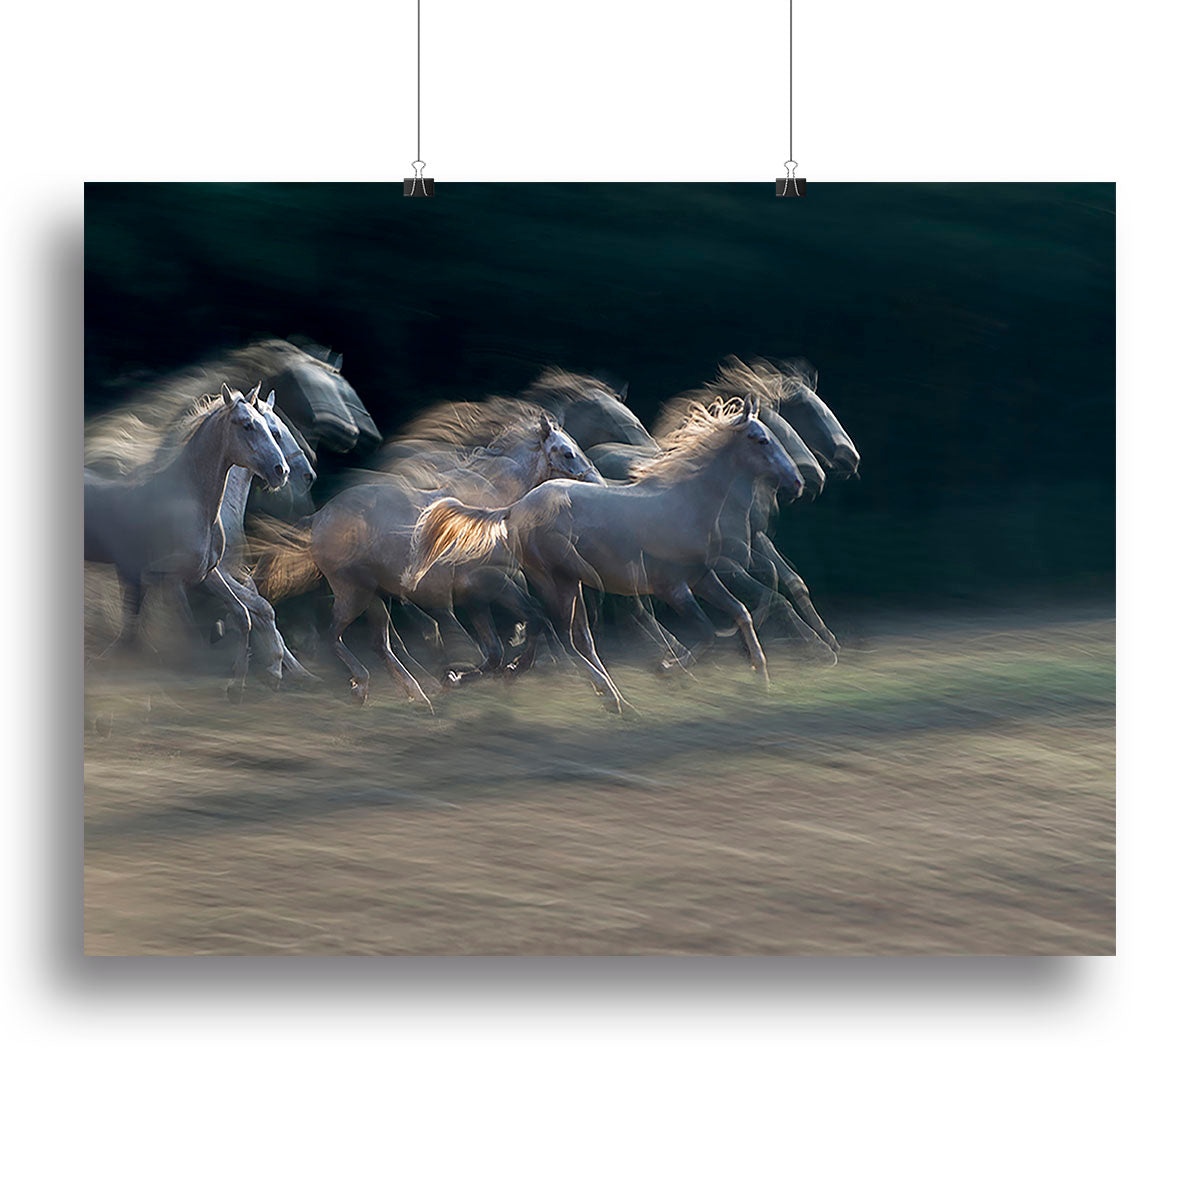 A Horses Gallop Canvas Print or Poster - Canvas Art Rocks - 2